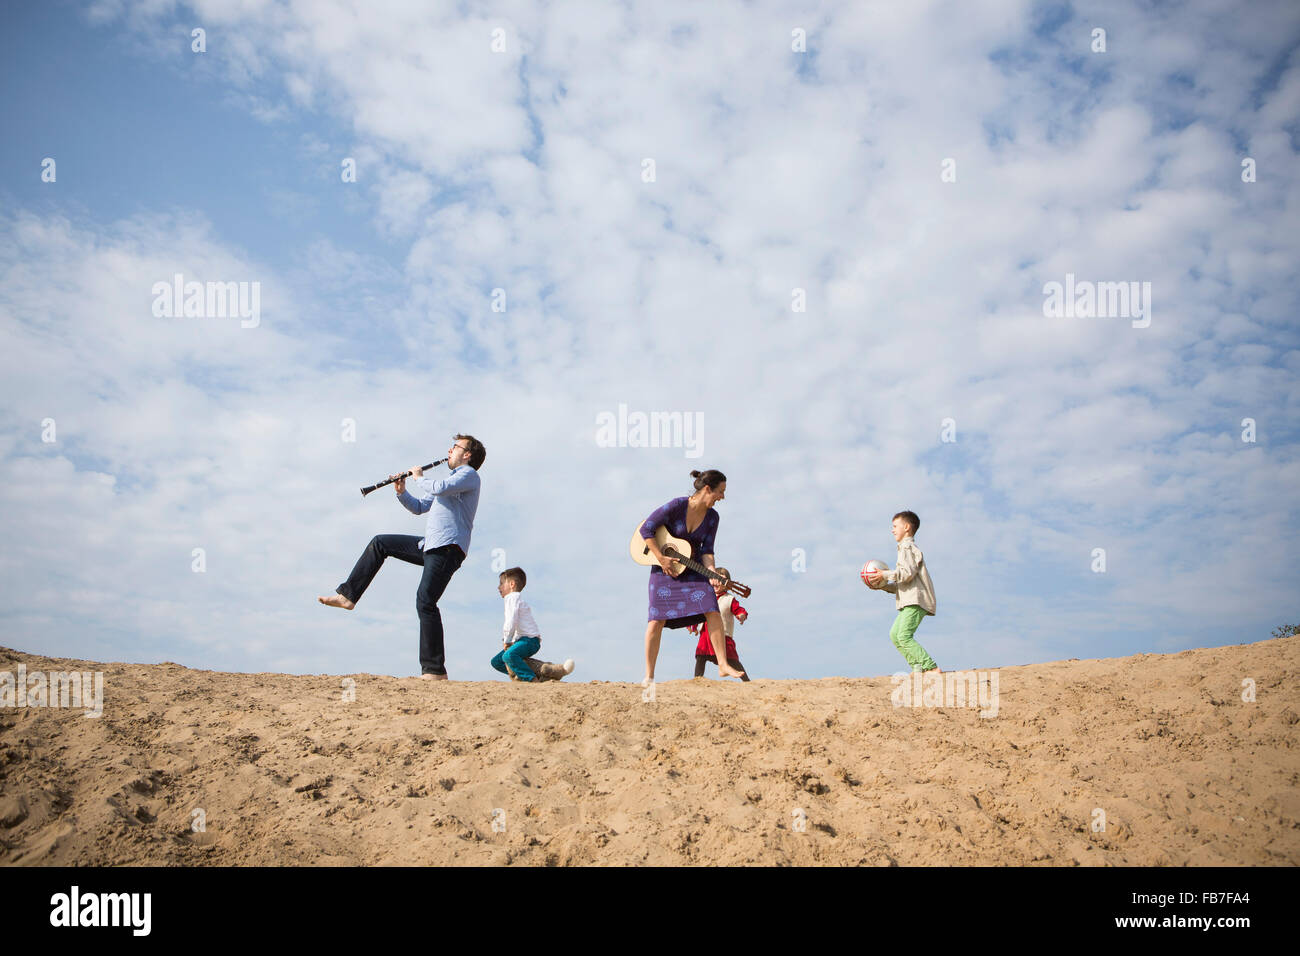 Basso angolo di visione della famiglia godendo sulla duna di sabbia contro il cielo nuvoloso Foto Stock